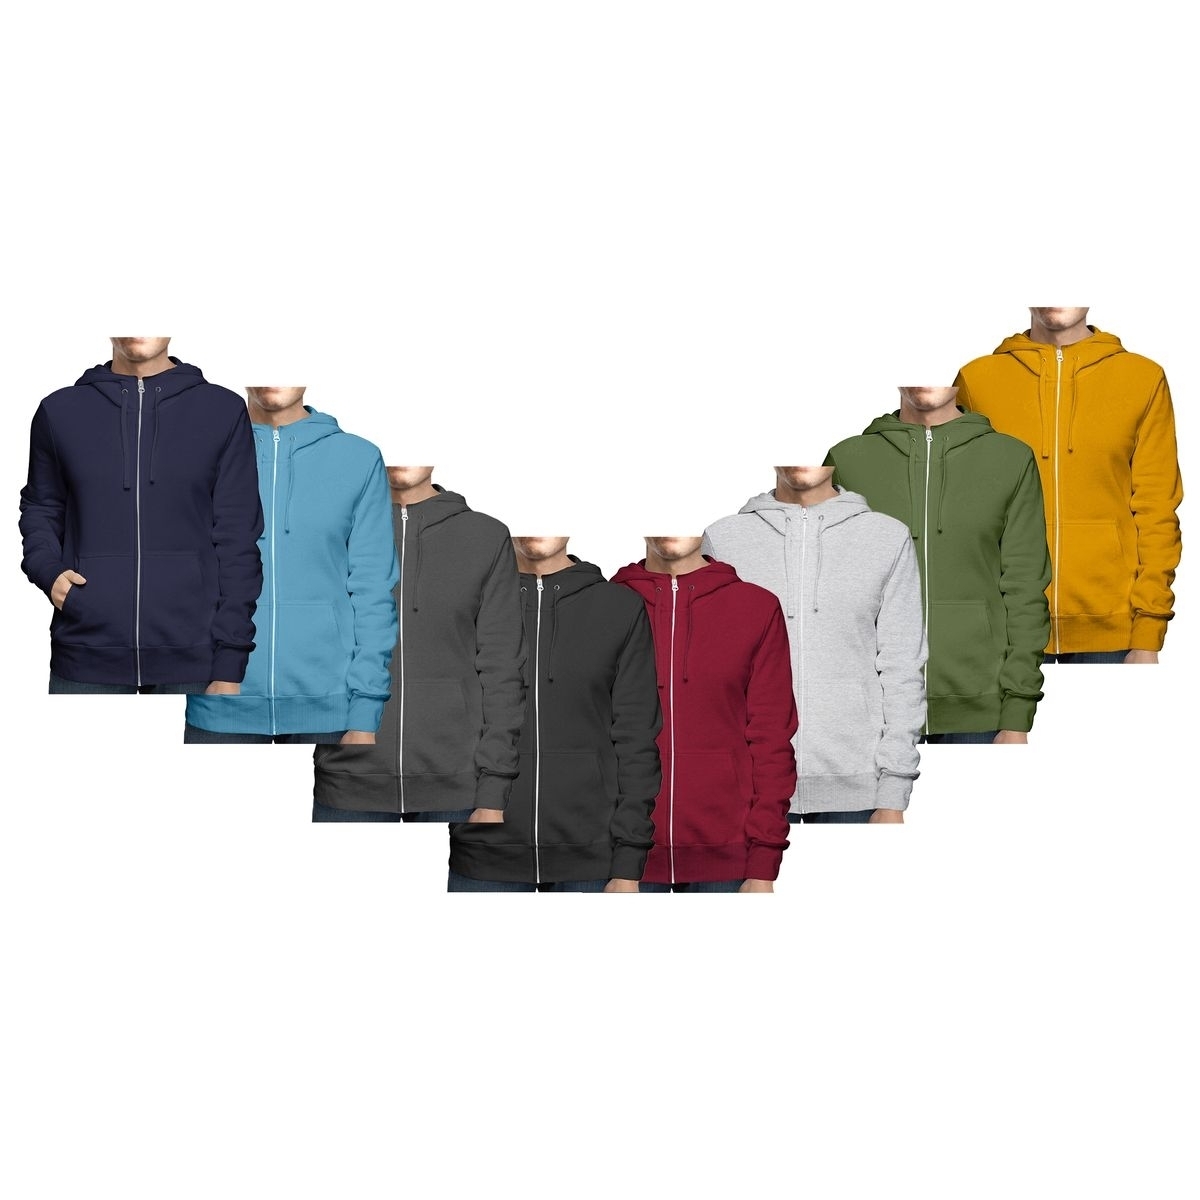 Men's Big & Tall Winter Warm Soft Cozy Full Zip-Up Fleece Lined Hoodie Sweatshirt - Charcoal, Large